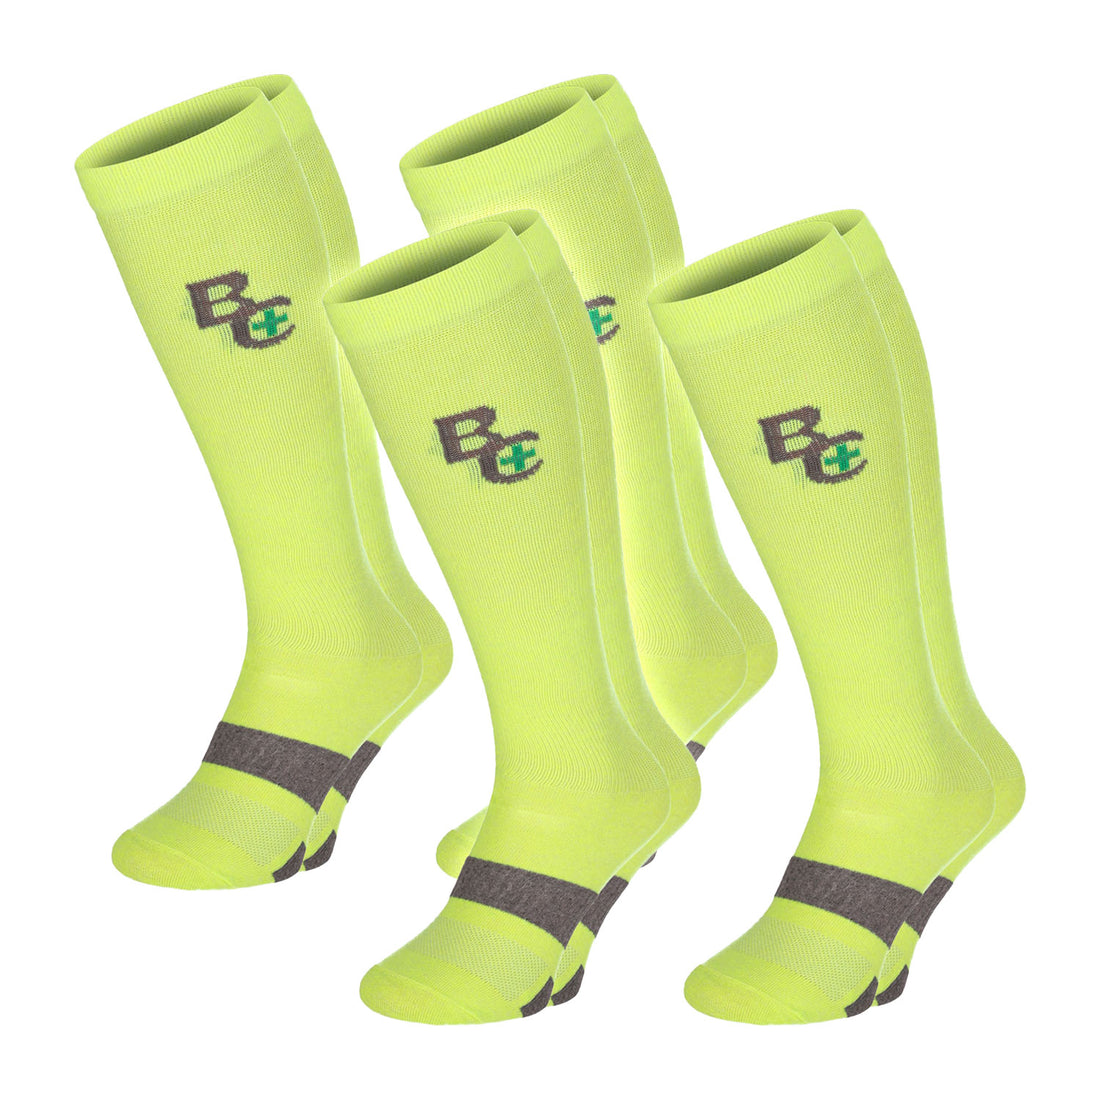 ChiliLifestyle Socken BestCare Compression Knie grün 4 Paar, Damen, Herren